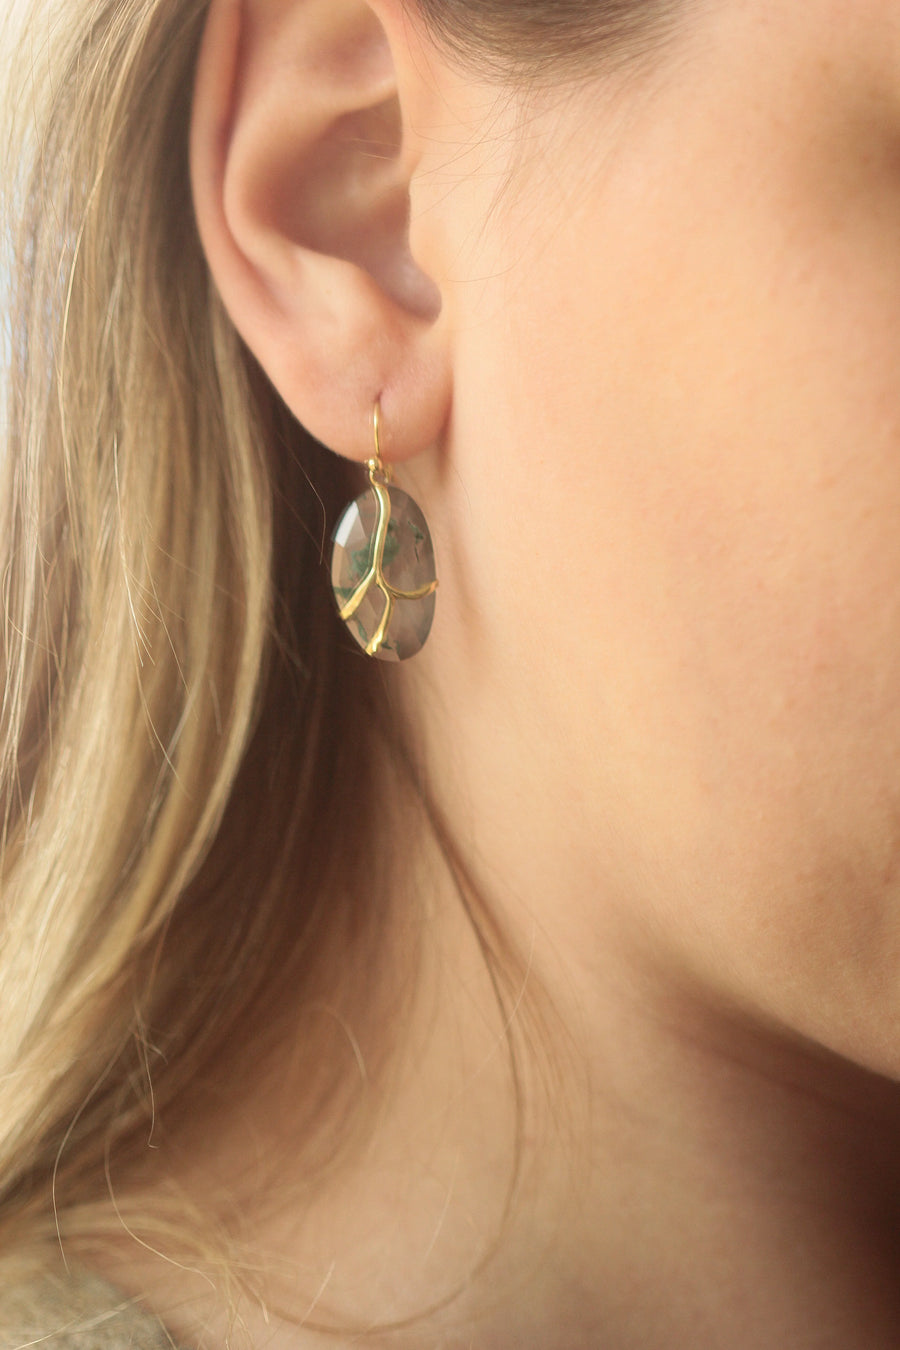 OOAK Butterfly Earrings - 18k Gold + Moss Agate